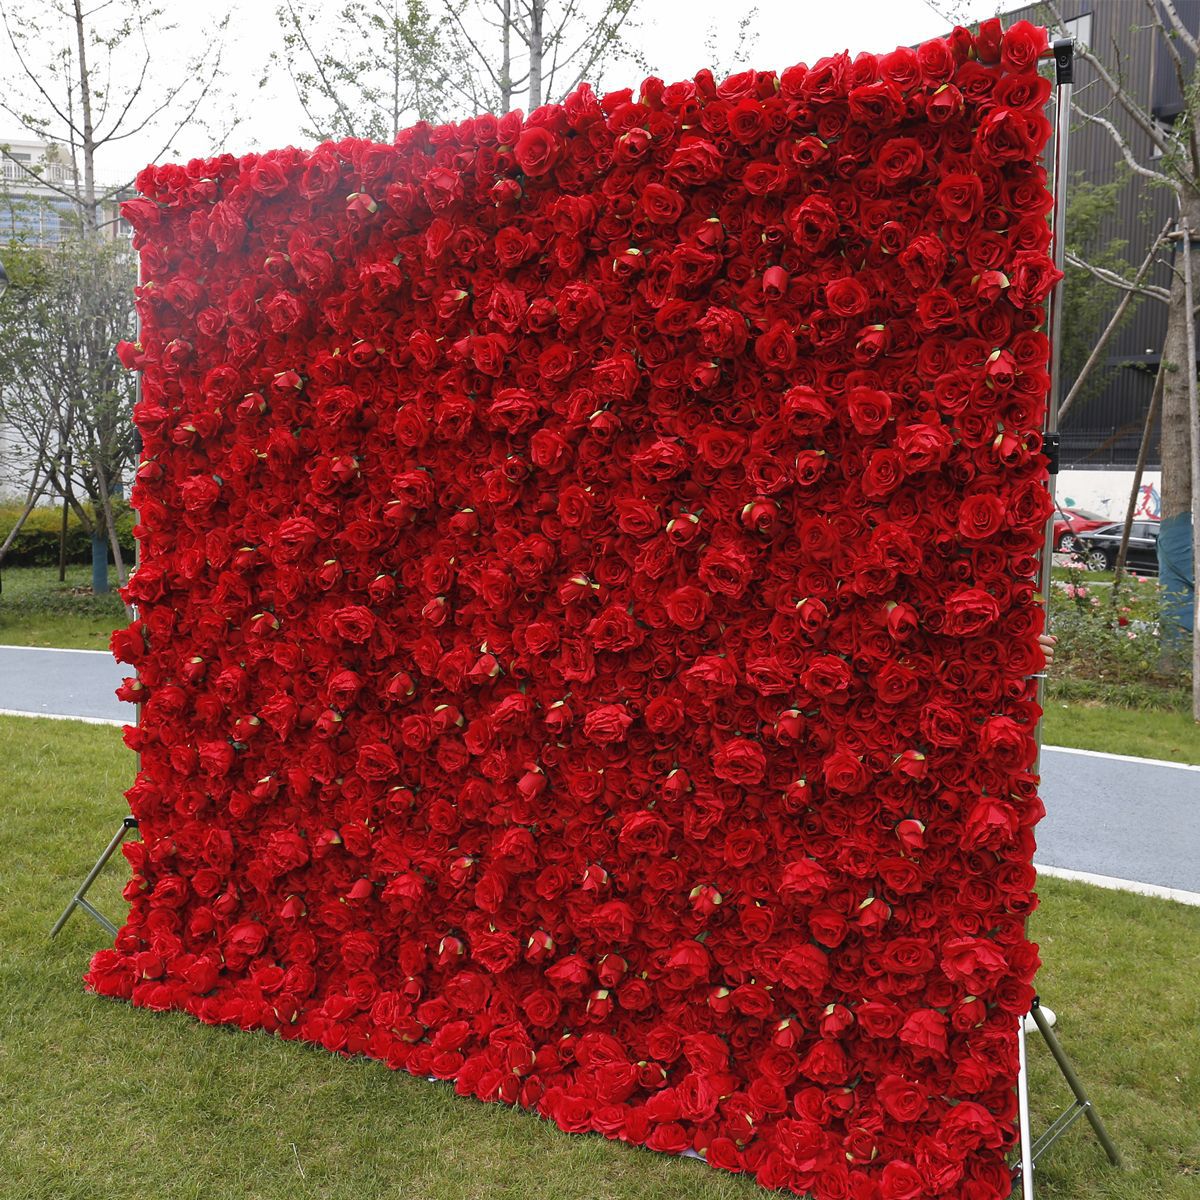 Tembok mawar simulasi ing dekorasi pernikahan kain tembok latar mburi abang, dekorasi jendela mall, tembok tanduran, susunan kembang